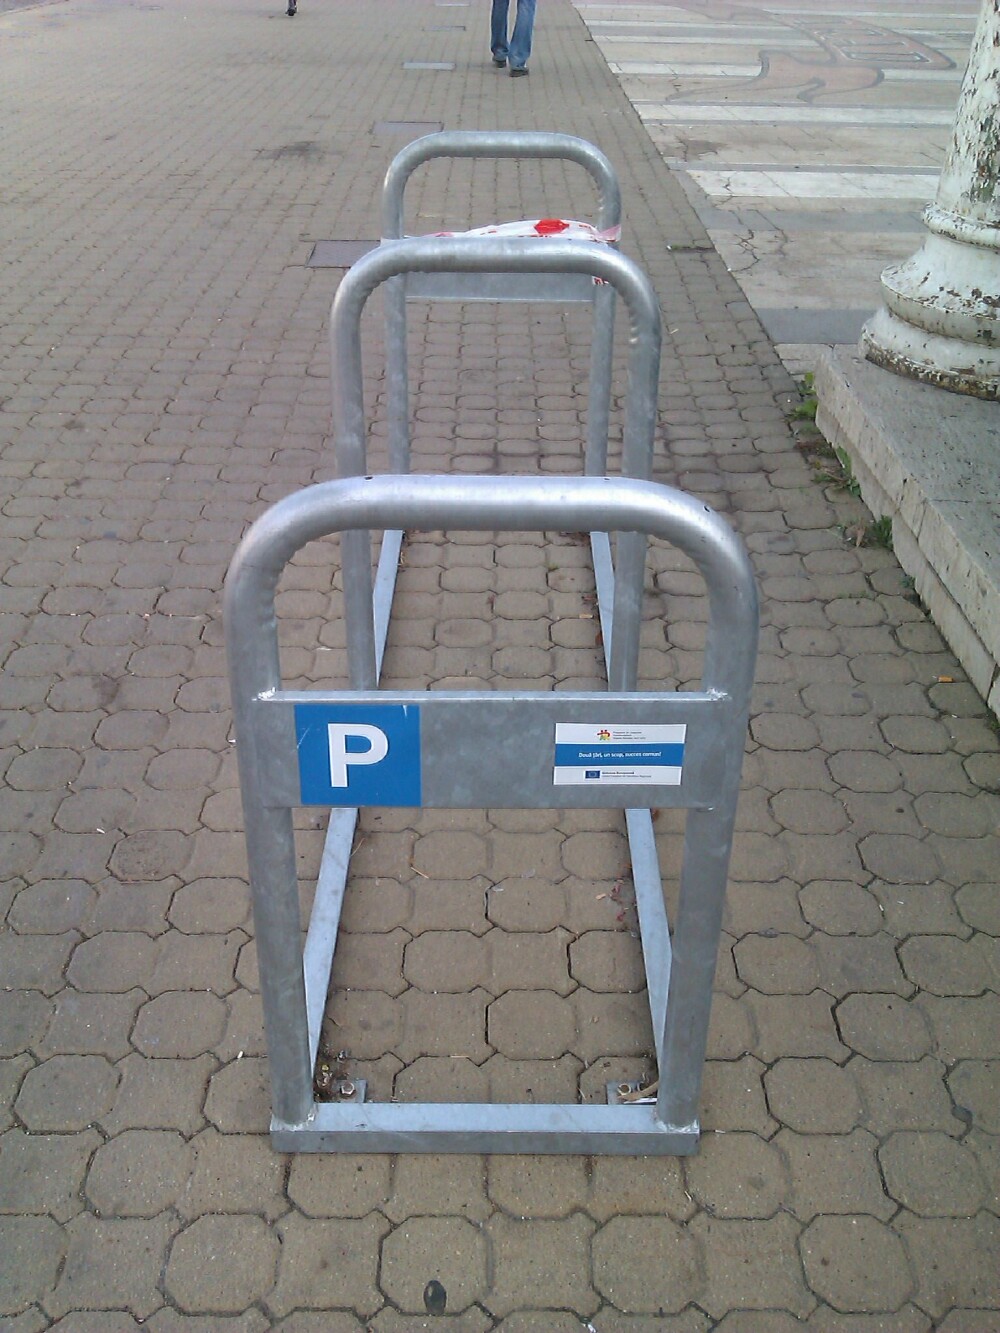 Noile rastele amplasate in Arad, considerate o alegere neinspirata de catre biciclisti. Afla motivul - Imaginea 3